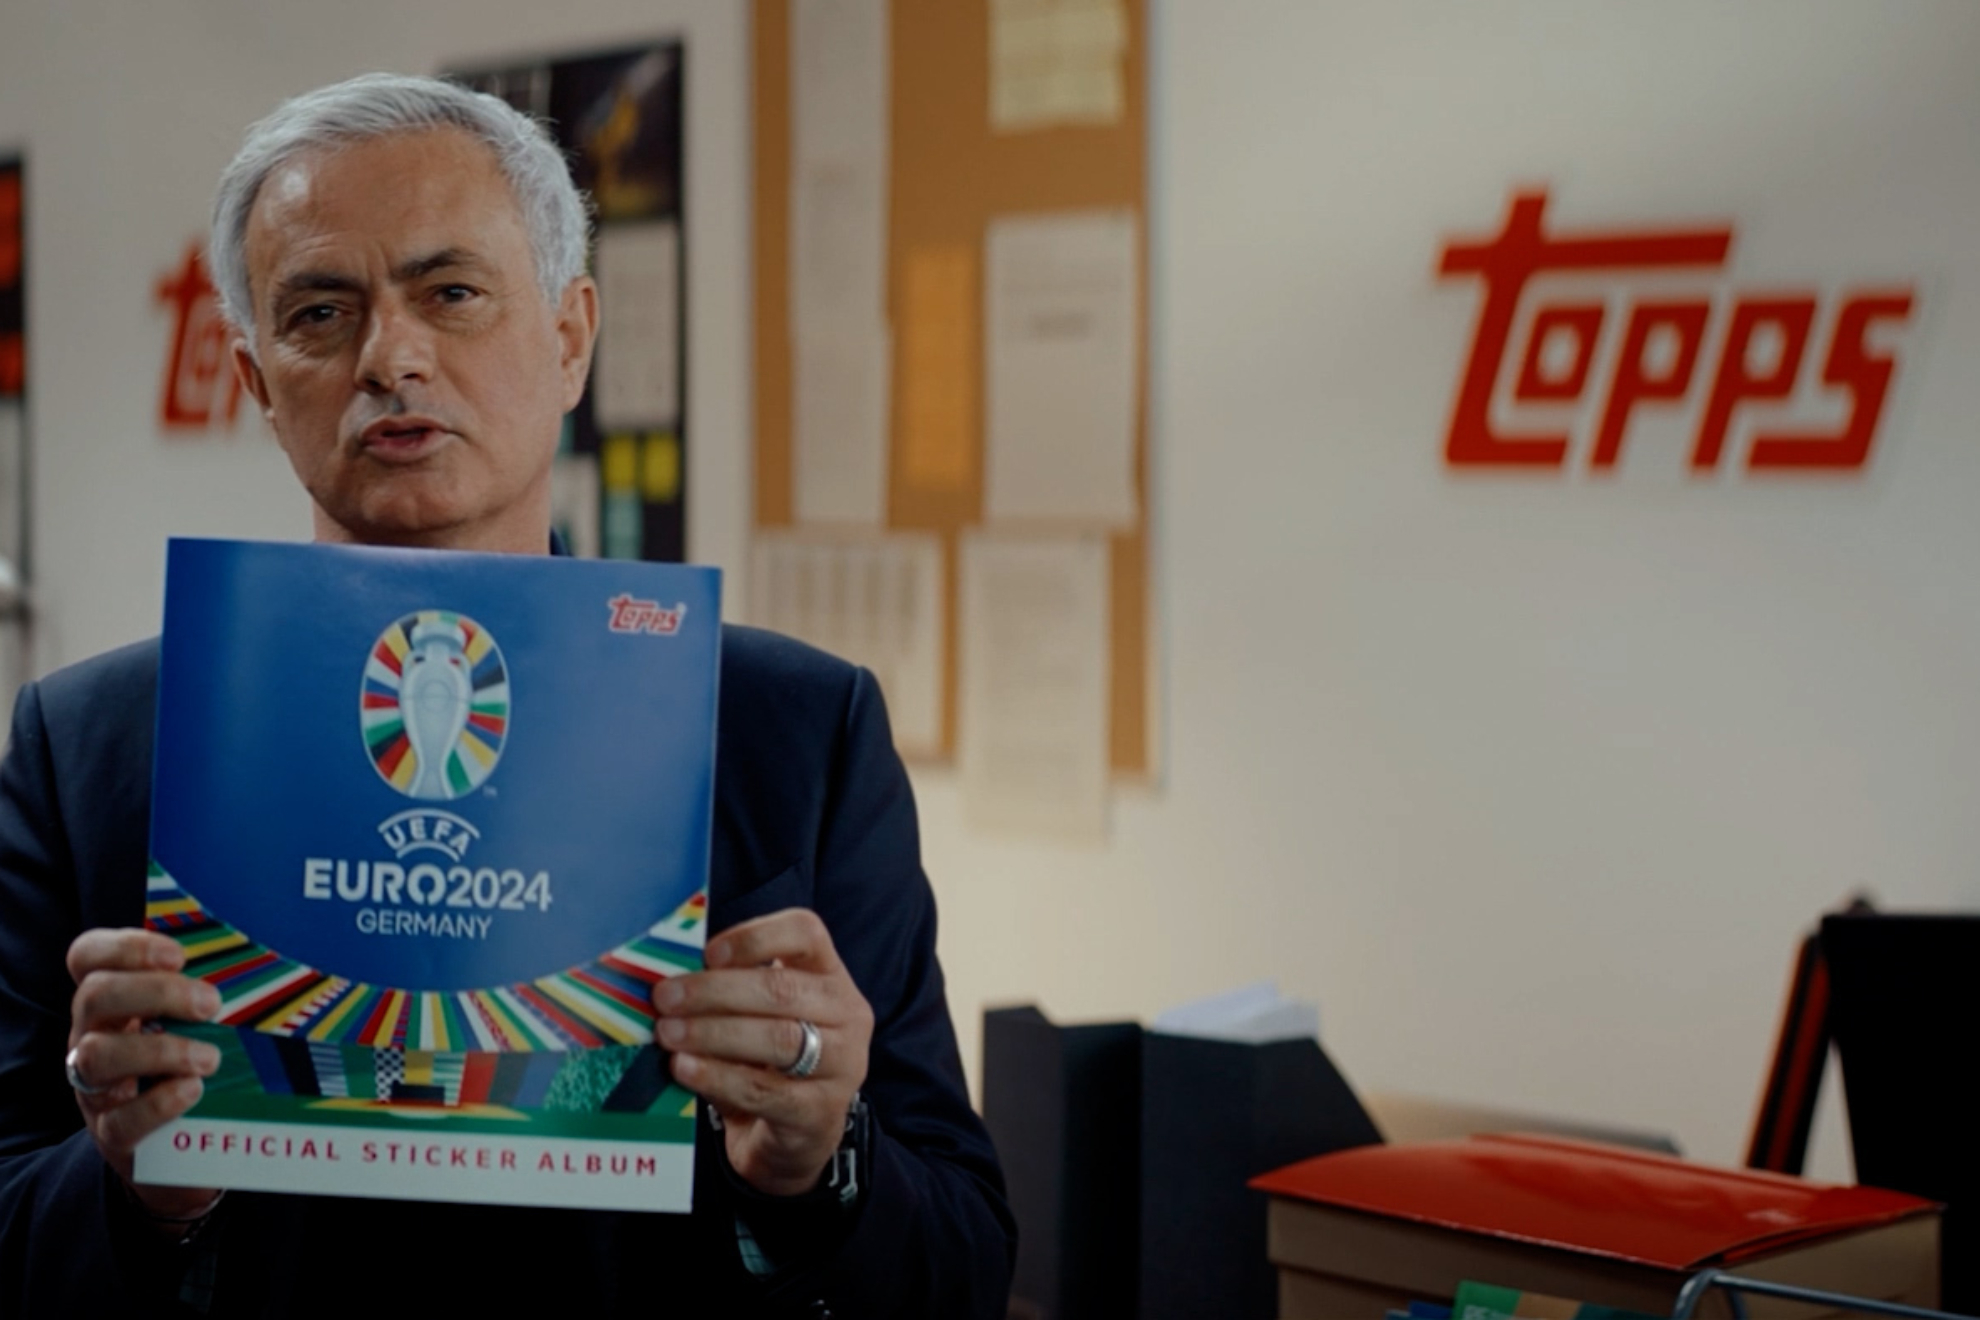 Jos� Mourinho prepara a su equipo para la UEFA EURO 2024